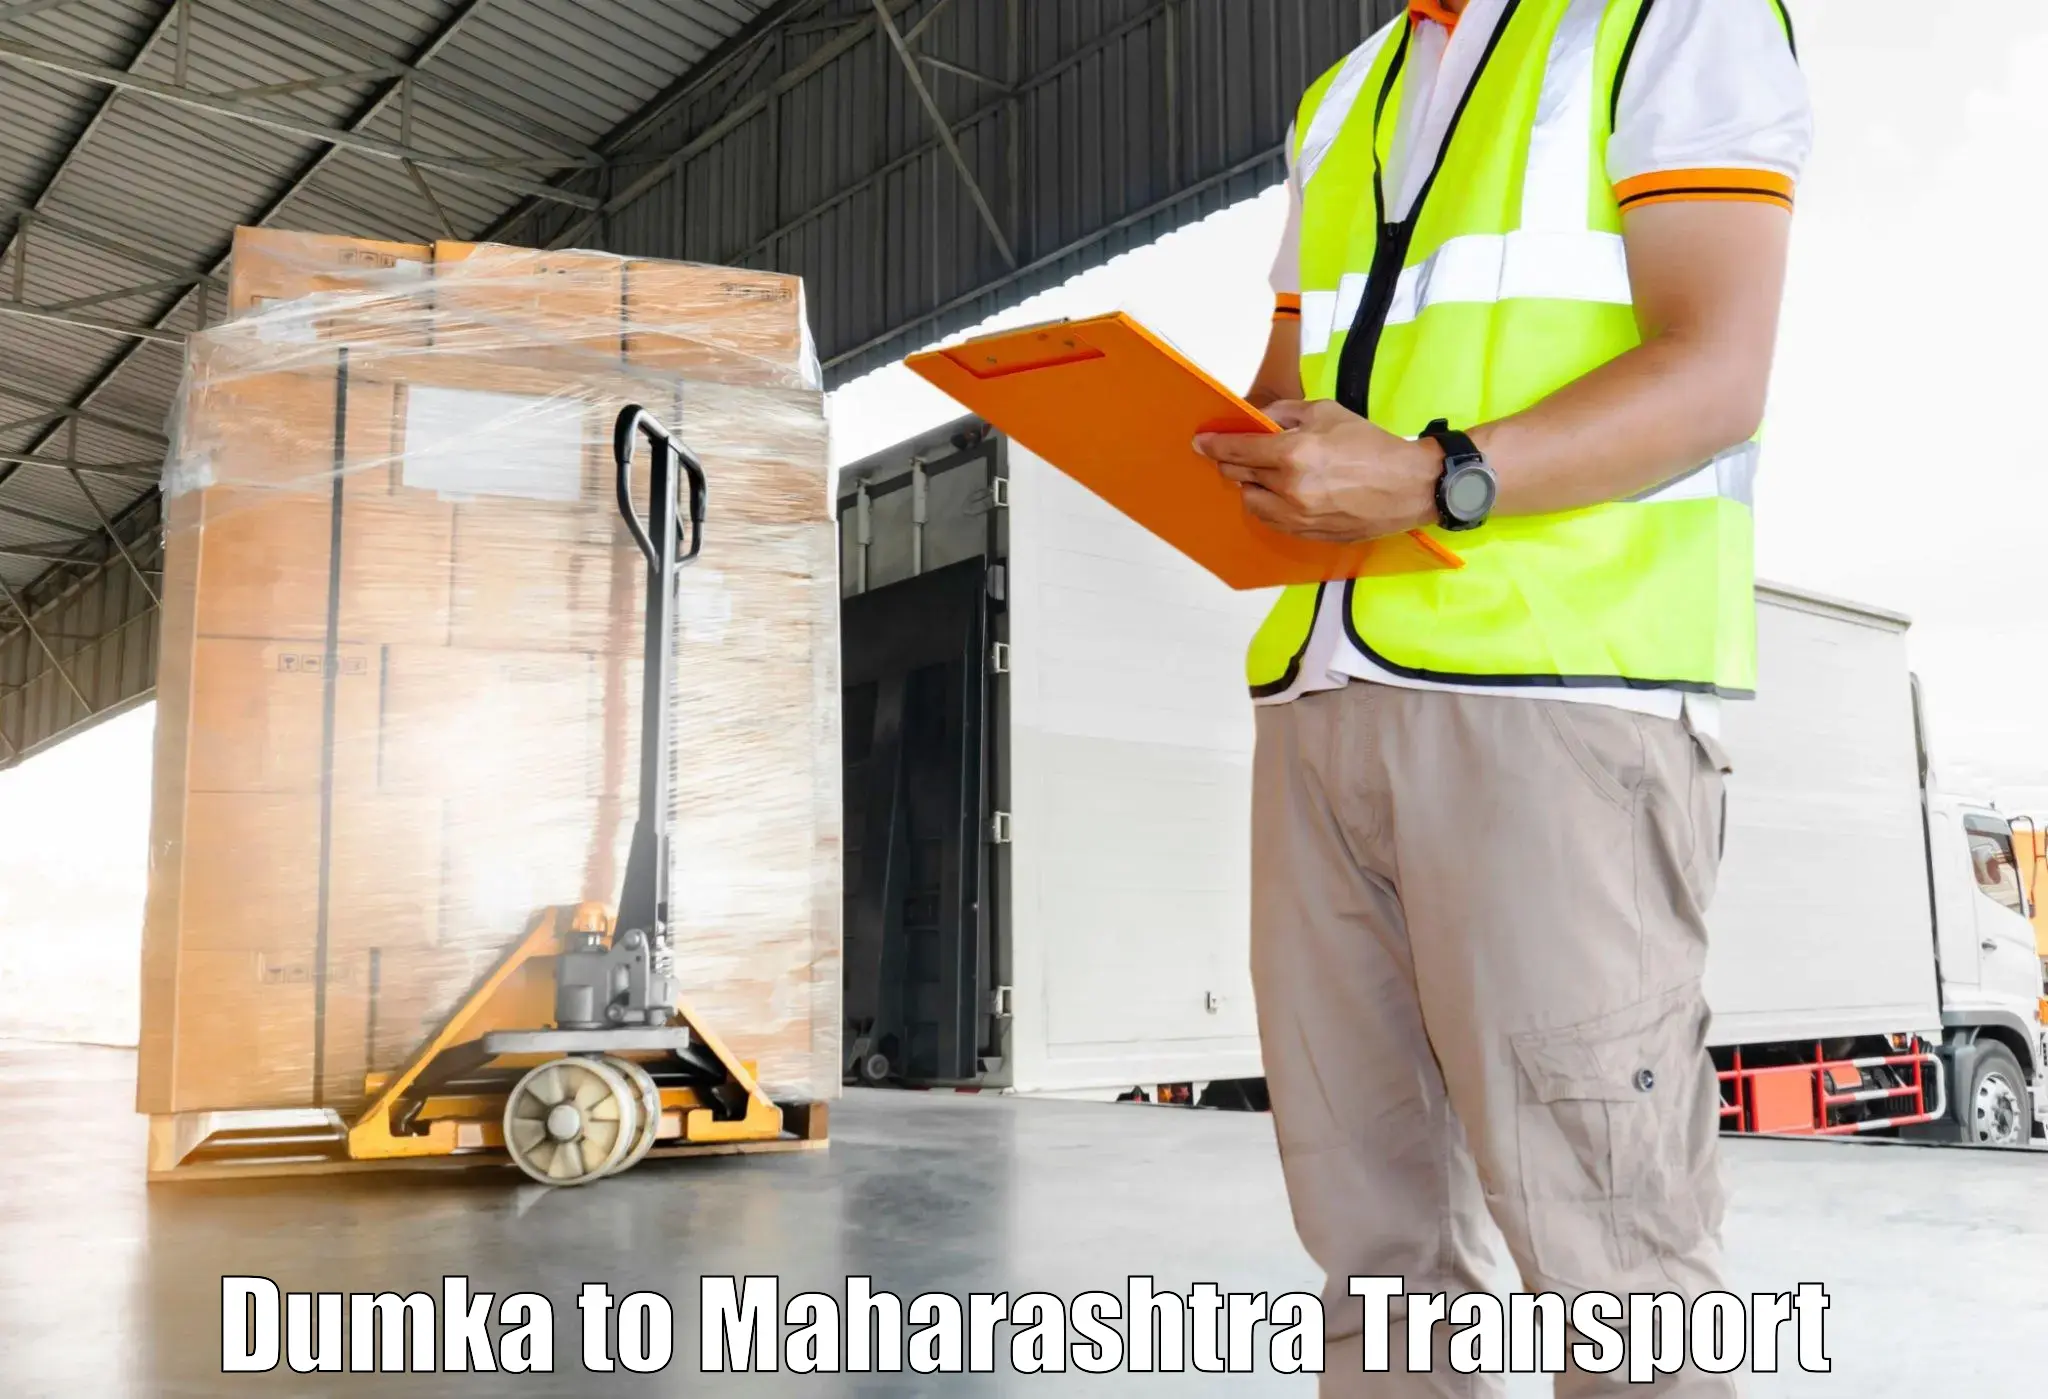 Container transportation services Dumka to Maharashtra